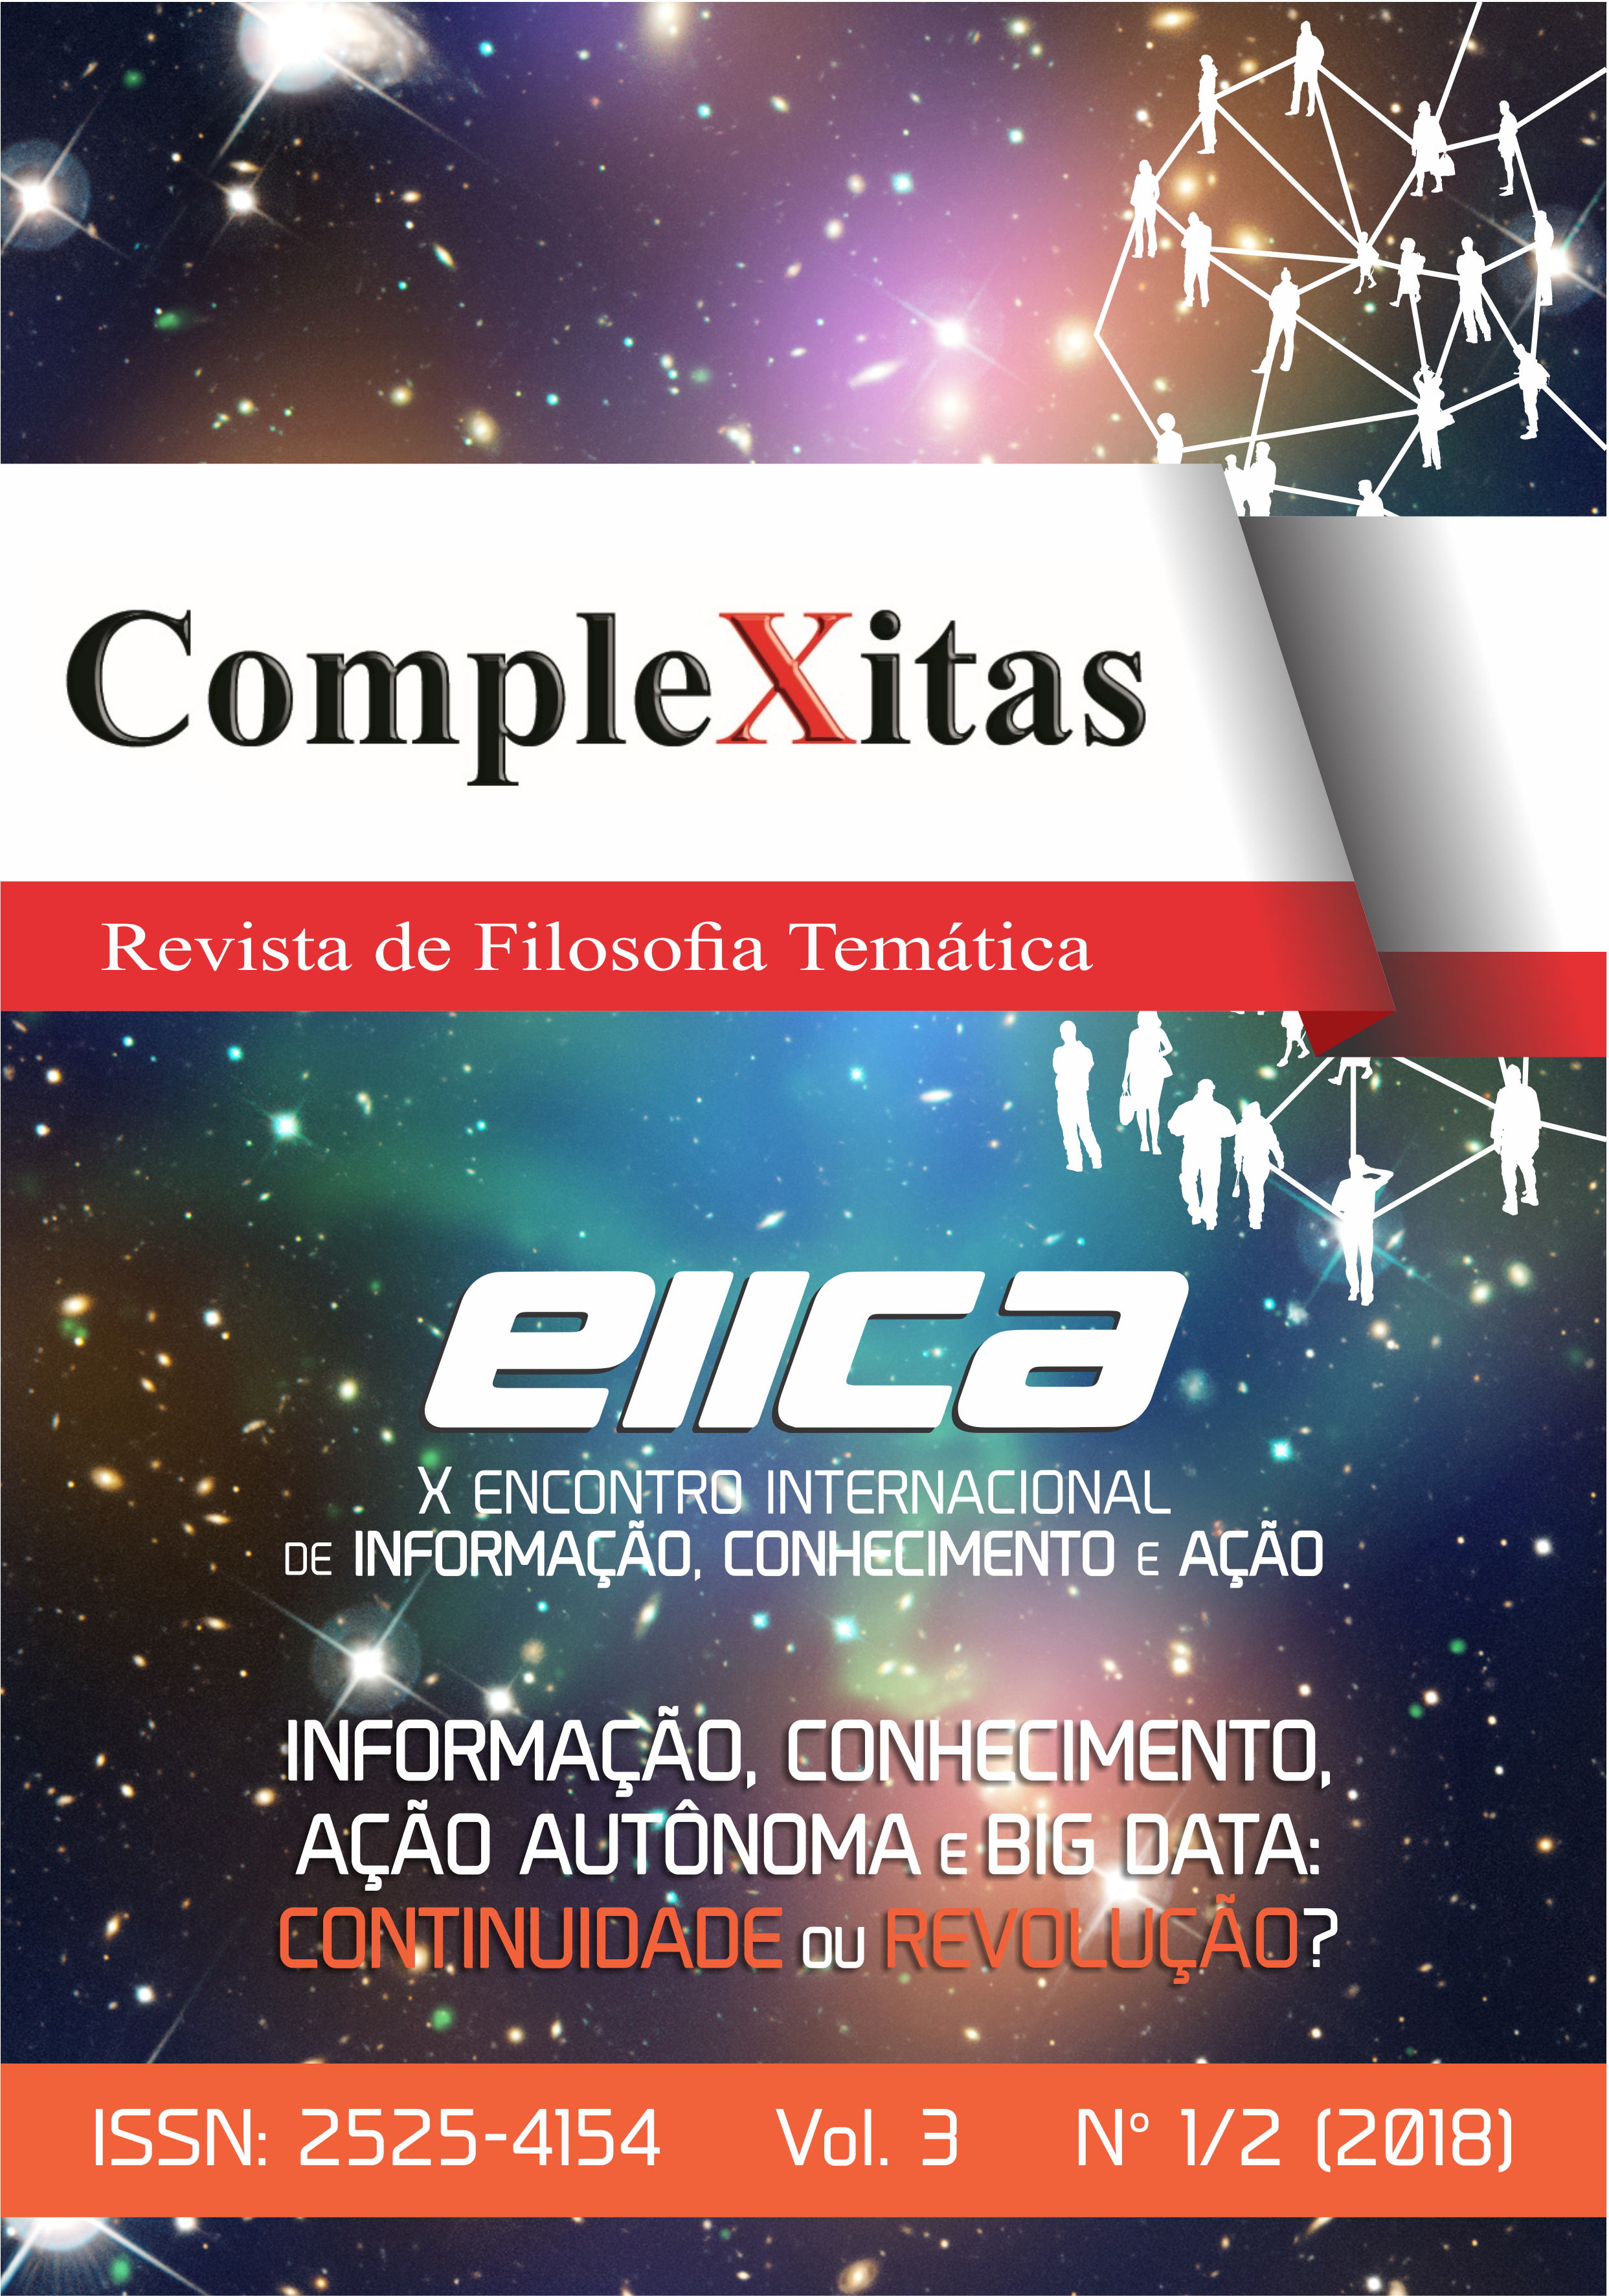 					View Vol. 3 No. 1 (2018): COMPLEXITAS - REVISTA DE FILOSOFIA TEMÁTICA
				